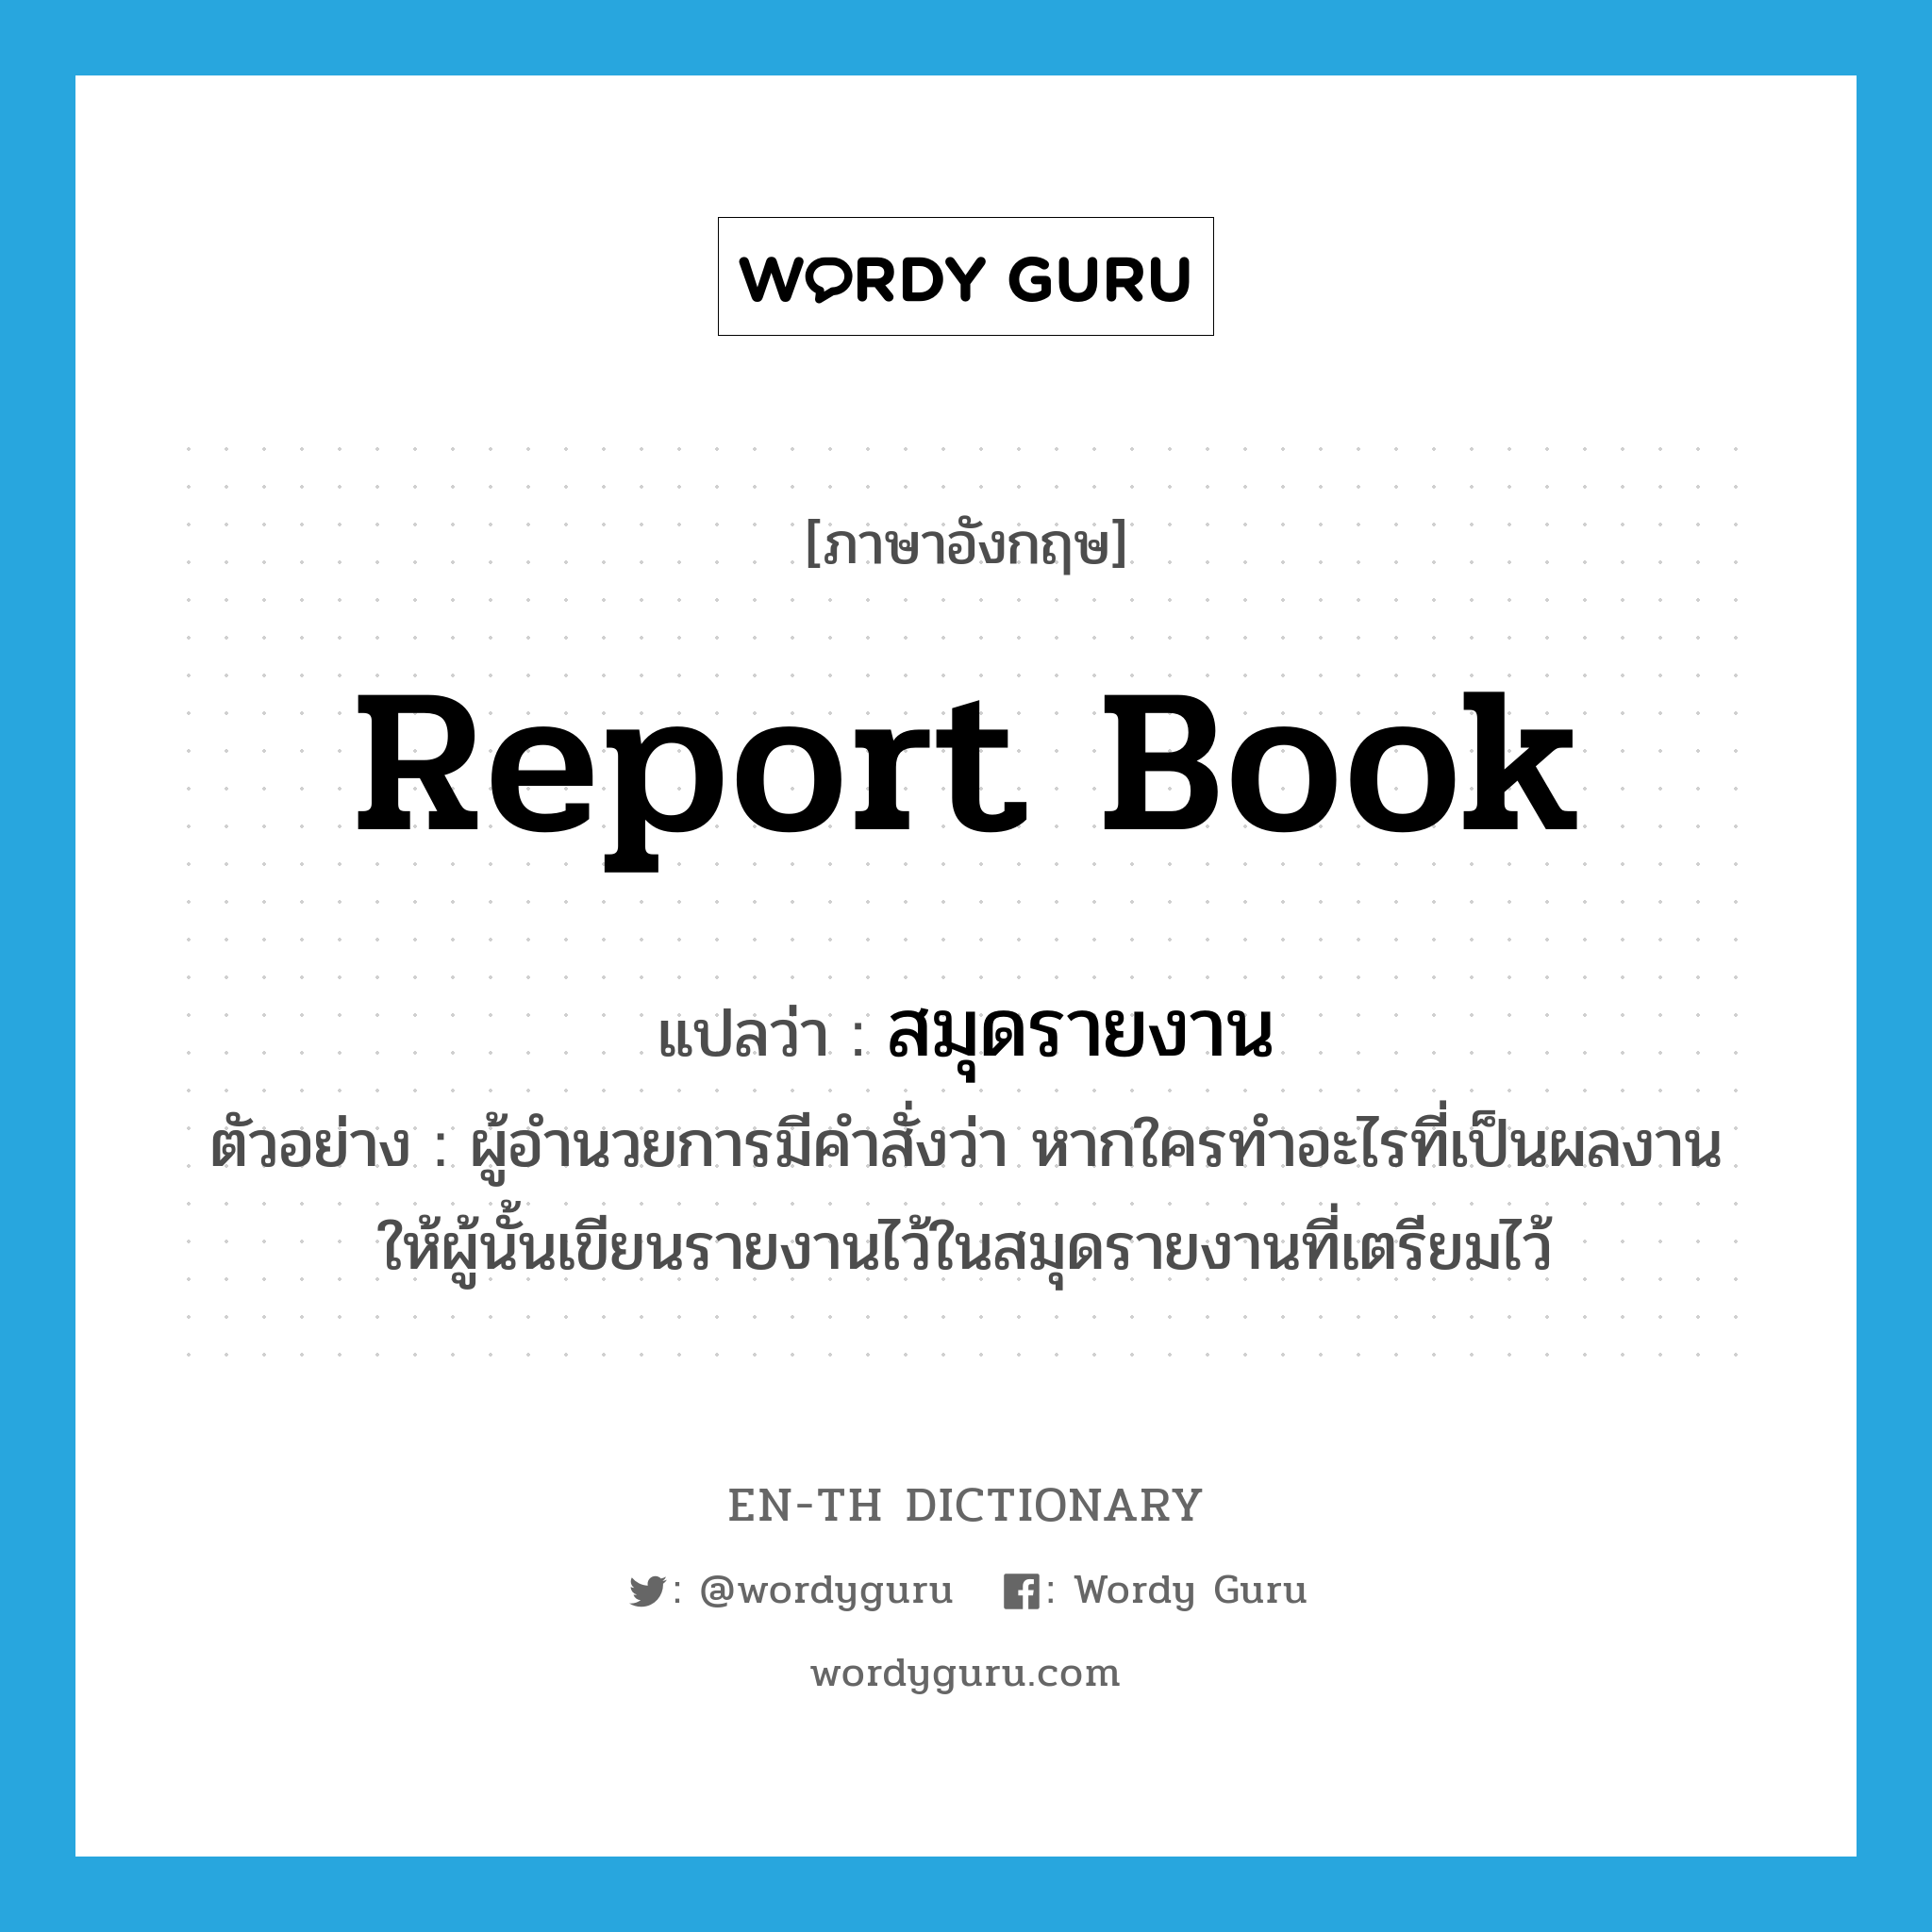 report book แปลว่า?, คำศัพท์ภาษาอังกฤษ report book แปลว่า สมุดรายงาน ประเภท N ตัวอย่าง ผู้อำนวยการมีคำสั่งว่า หากใครทำอะไรที่เป็นผลงาน ให้ผู้นั้นเขียนรายงานไว้ในสมุดรายงานที่เตรียมไว้ หมวด N